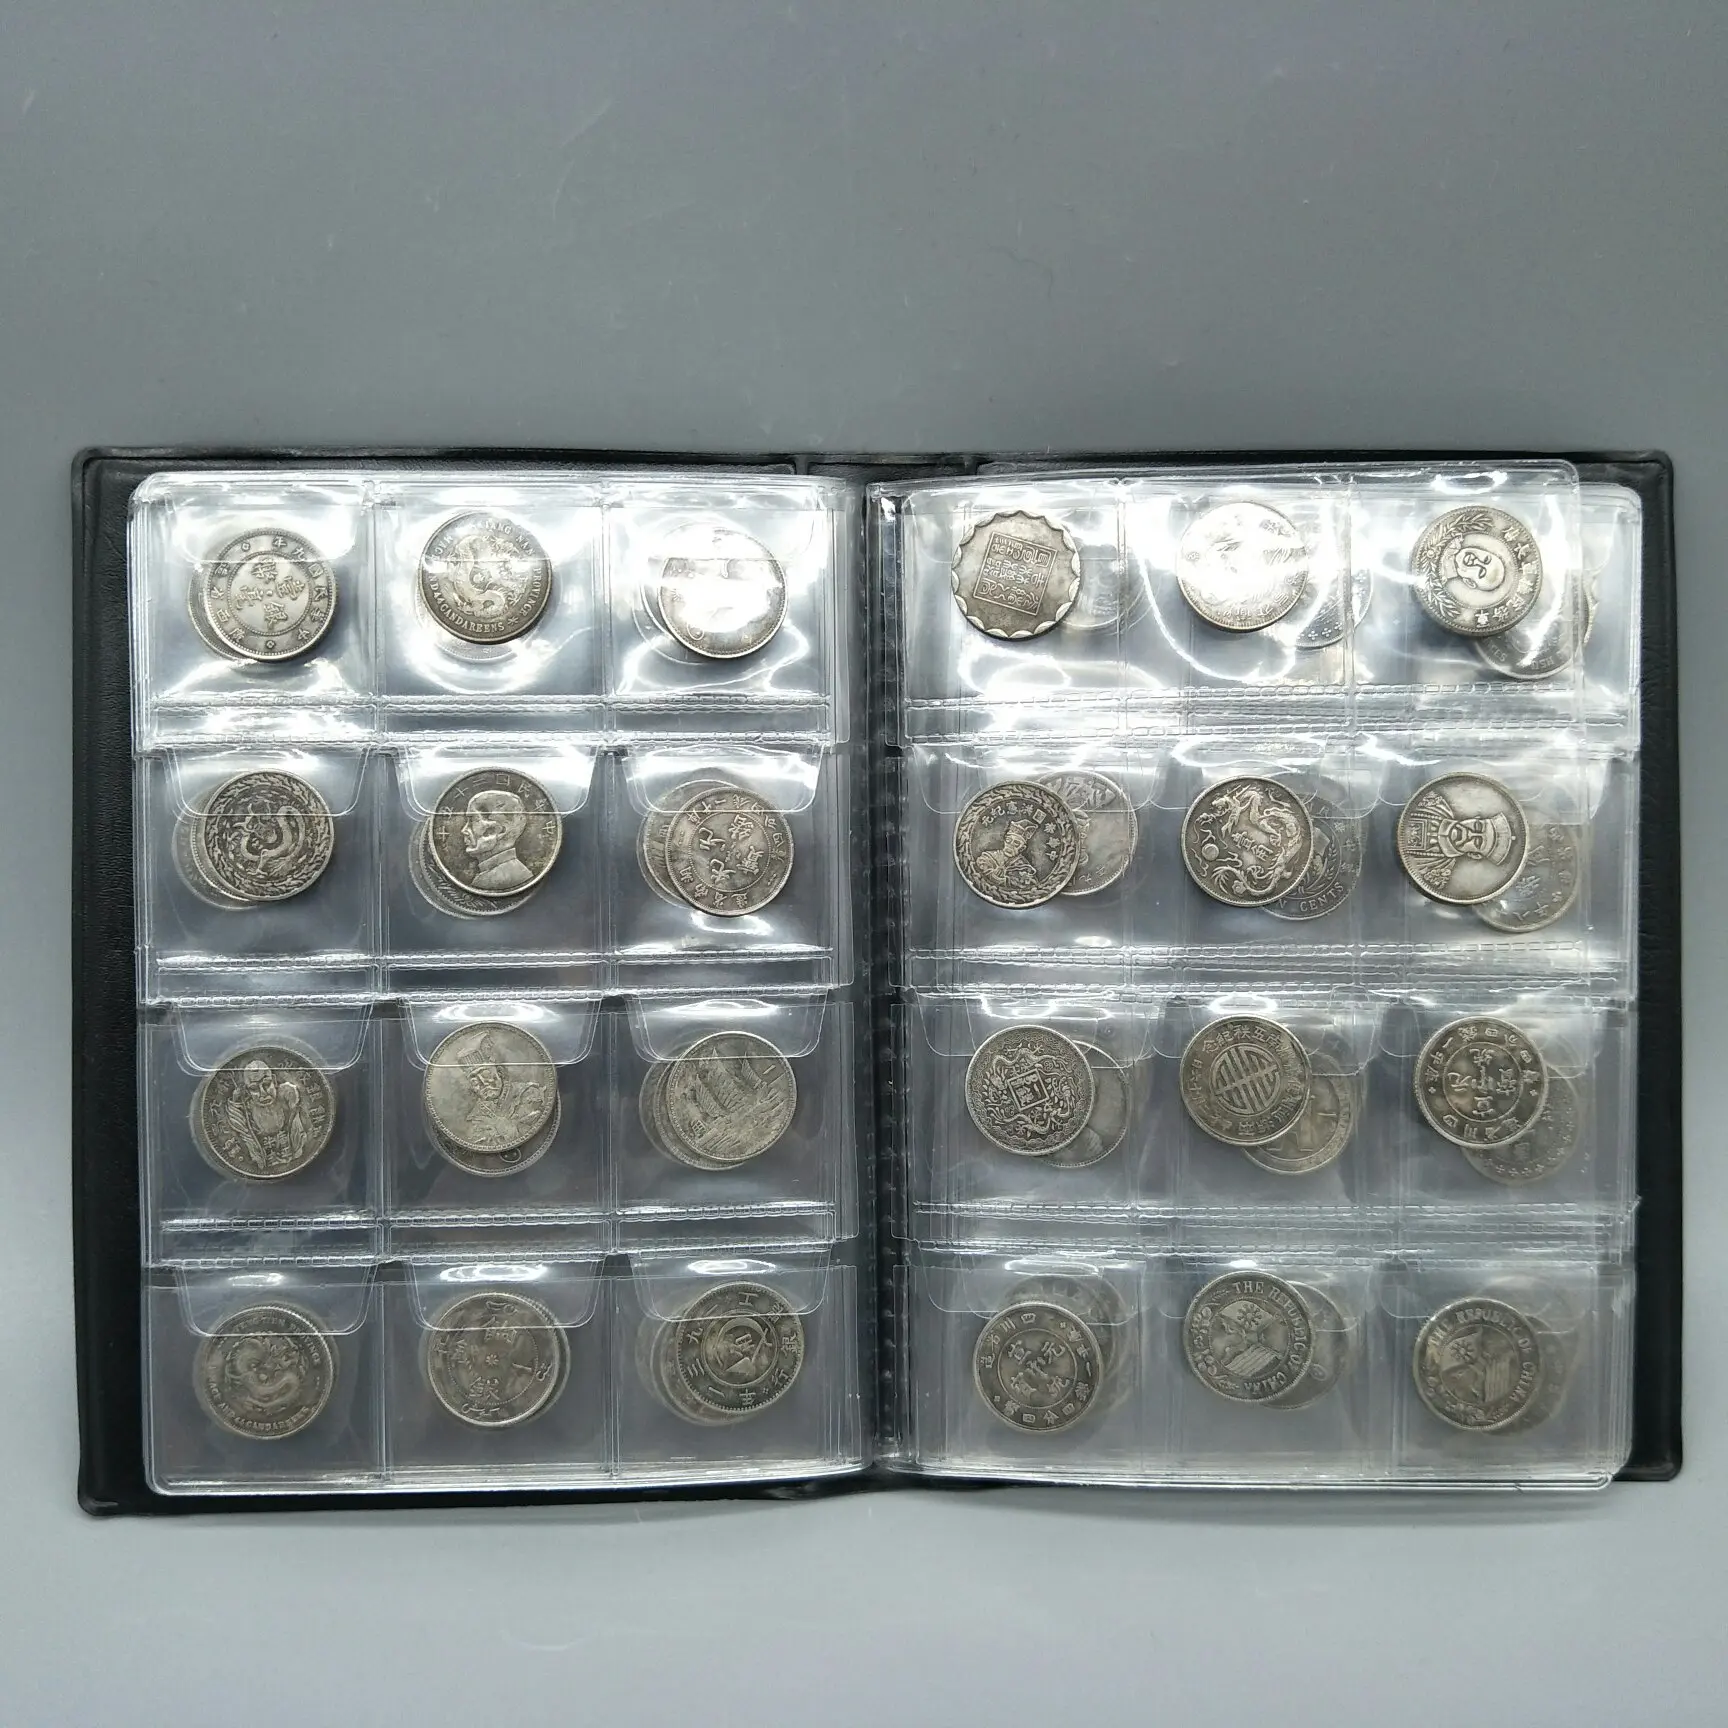 

120 штук/коллекция старых китайских монет, серебряная фотогалерея, металлическое украшение для дома ручной работы